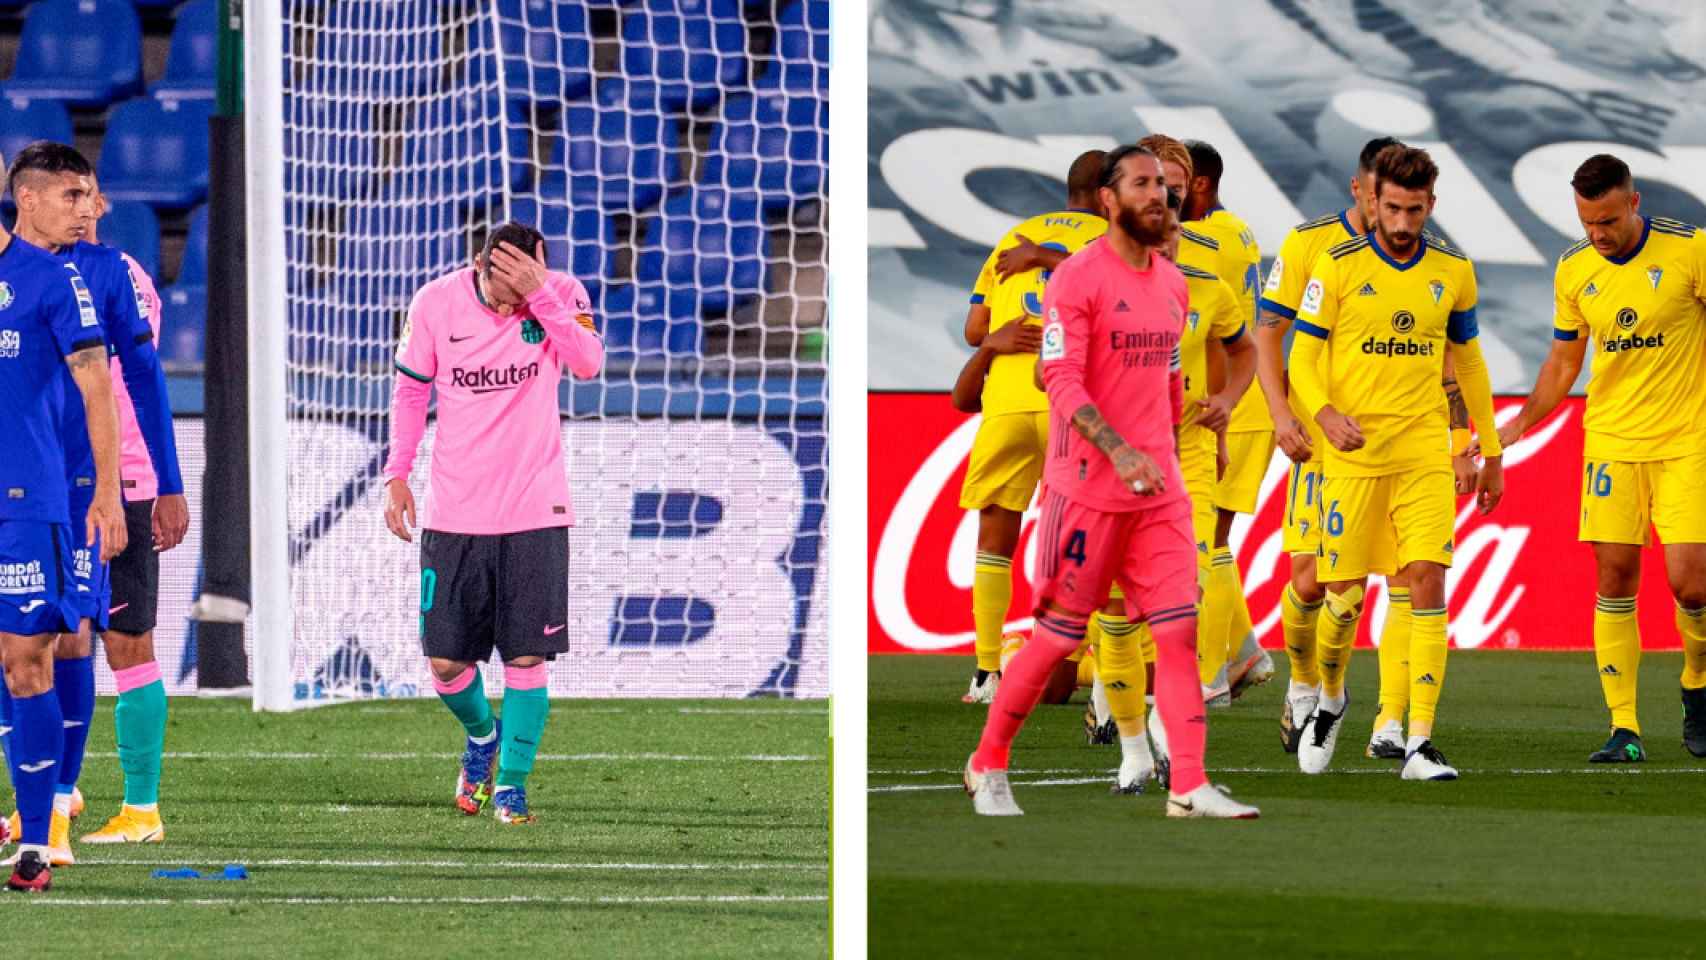 Montaje de las derrotas de Barça y Real Madrid antes del clásico | Culemanía